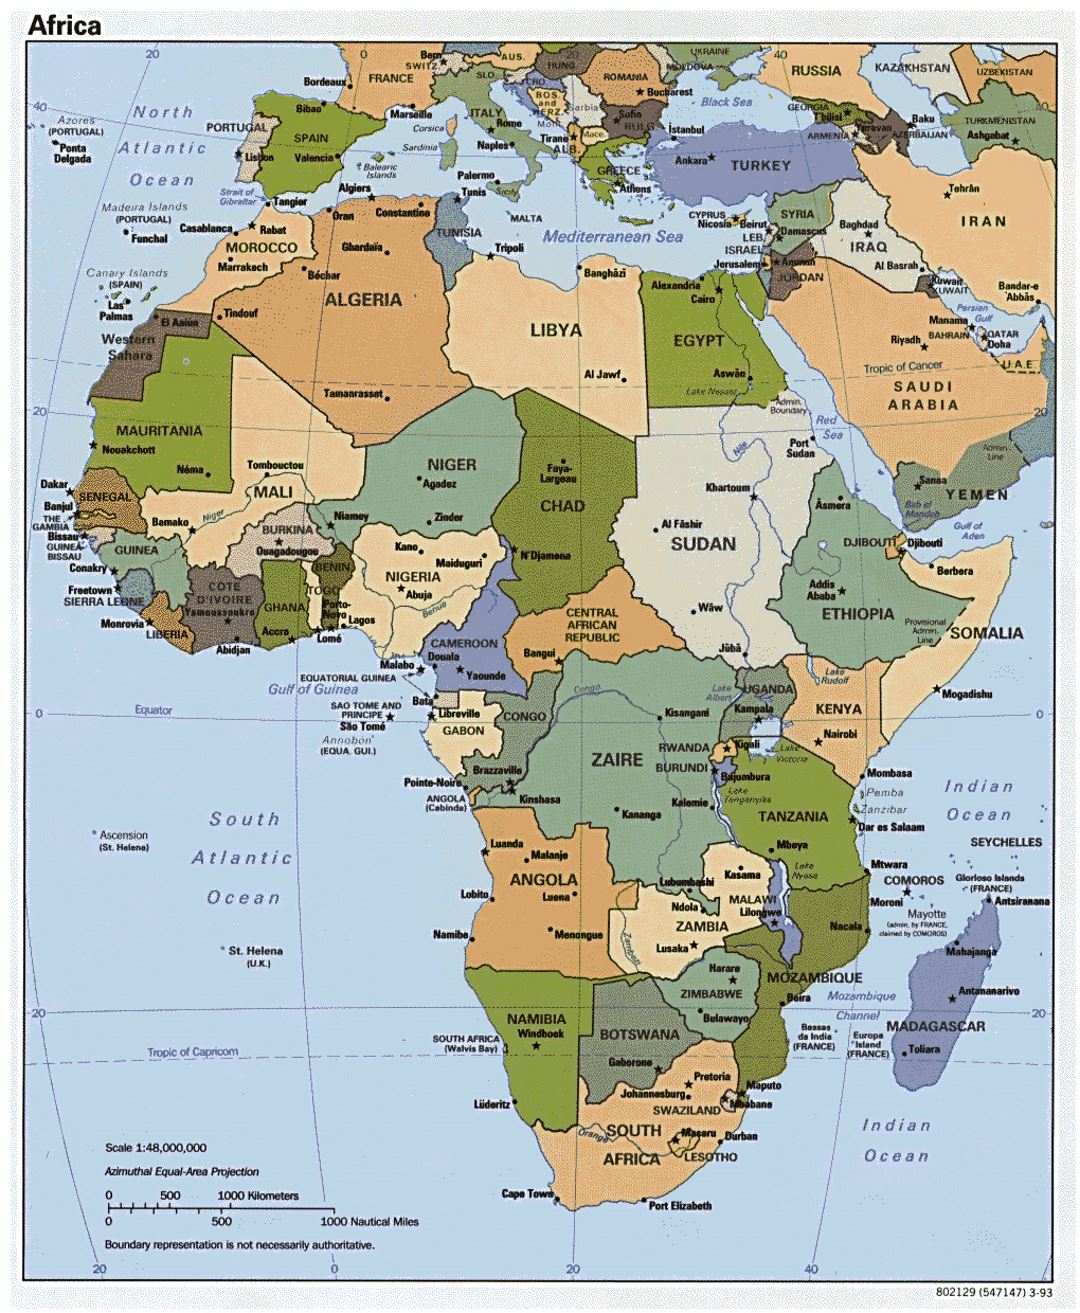 Mapa político detallada de África con las principales ciudades y capitales - 1993